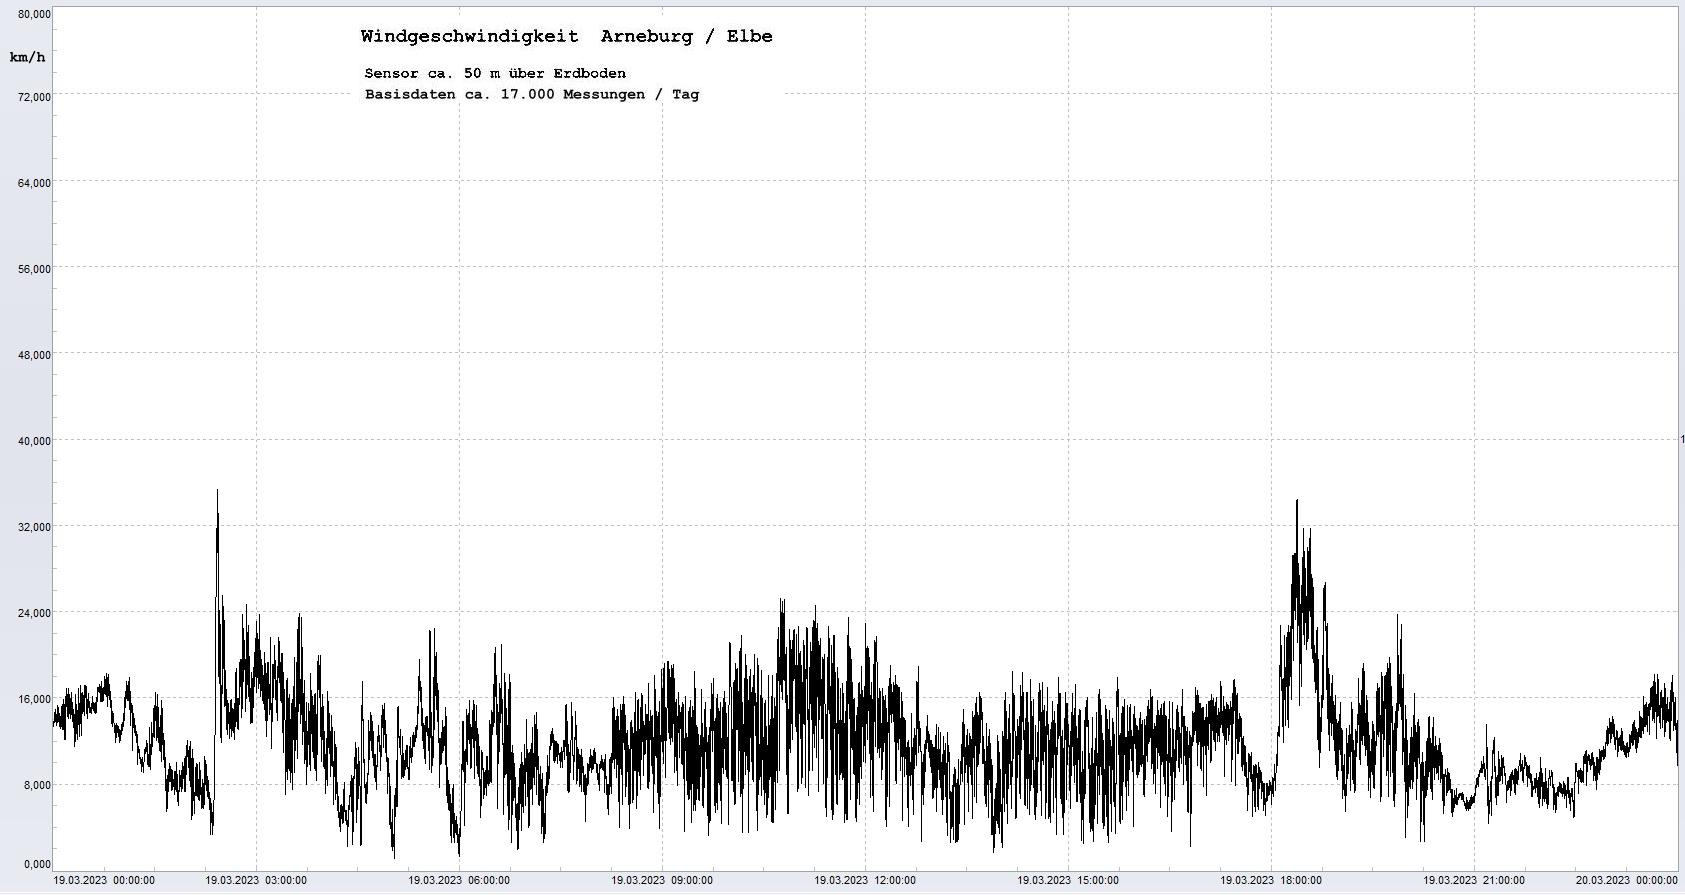 Arneburg Tages-Diagramm Winddaten, 19.03.2023
  Diagramm, Sensor auf Gebude, ca. 50 m ber Erdboden, Basis: 5s-Aufzeichnung